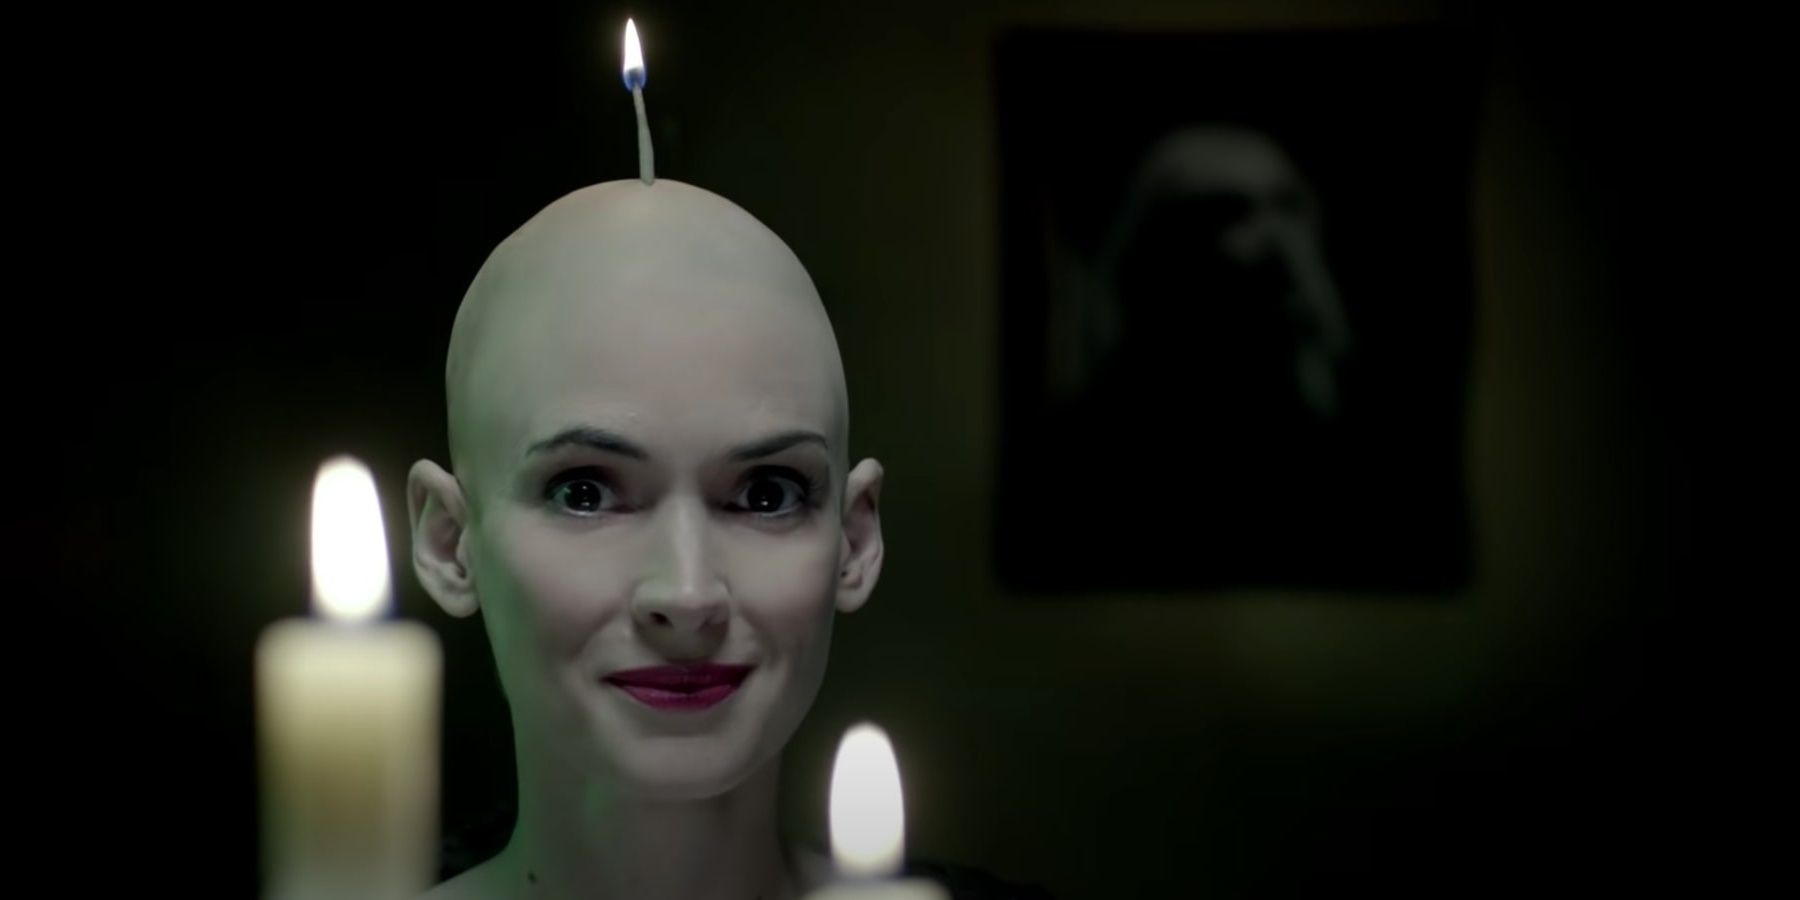 Winona Ryder in Killer's music video 